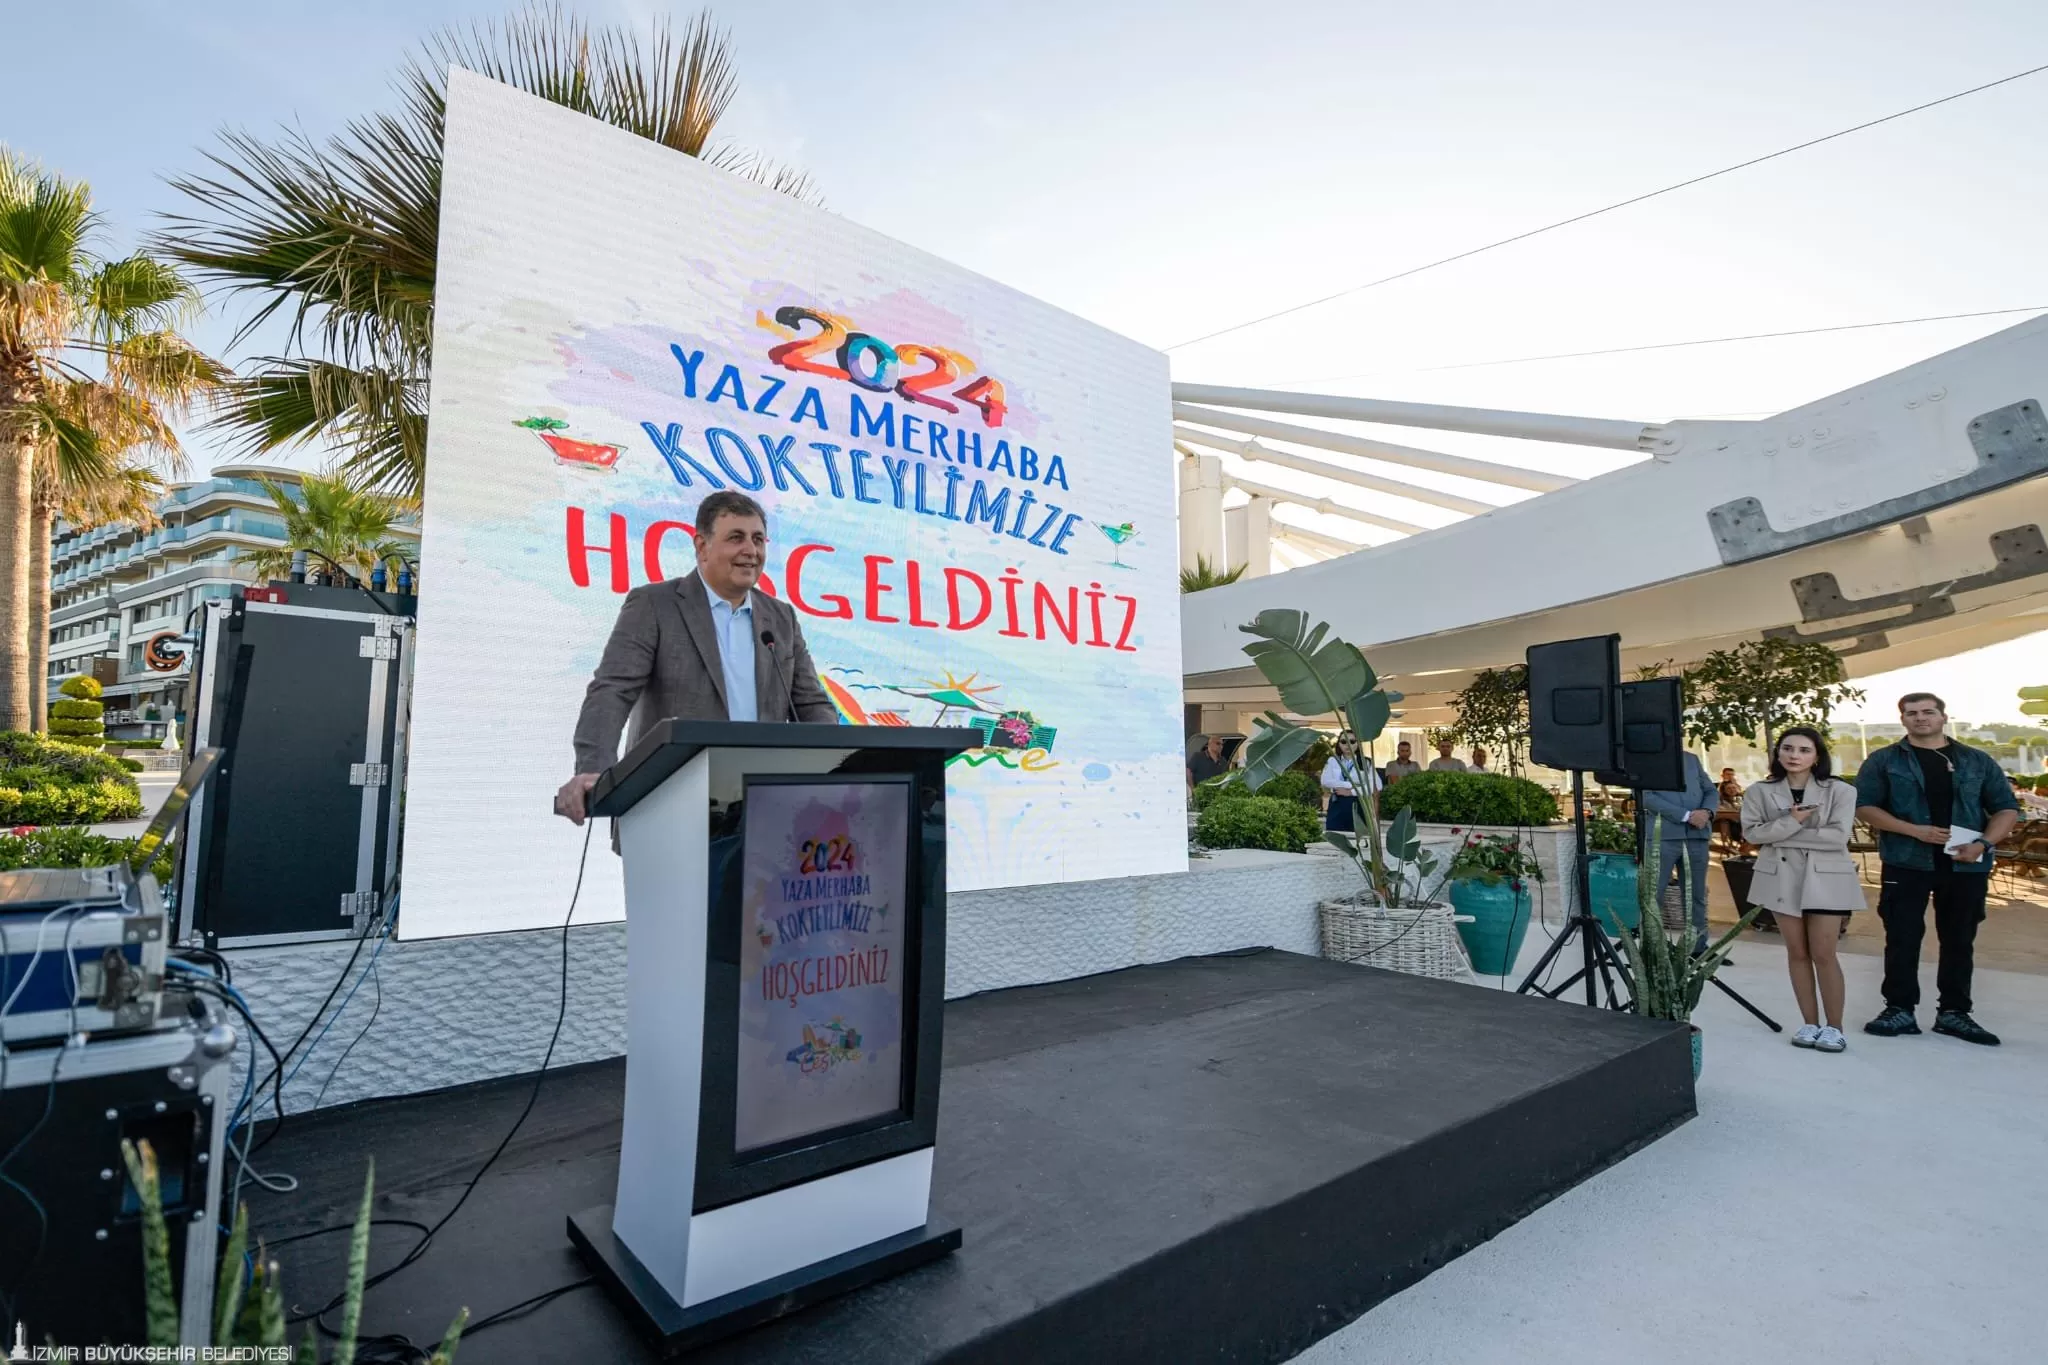 İzmir Büyükşehir Belediye Başkanı Dr. Cemil Tugay, Çeşme Turistik Otelciler ve İşletmeciler Birliği (ÇEŞTOB) tarafından düzenlenen Yaza Merhaba Kokteyli'nde önemli açıklamalarda bulundu.